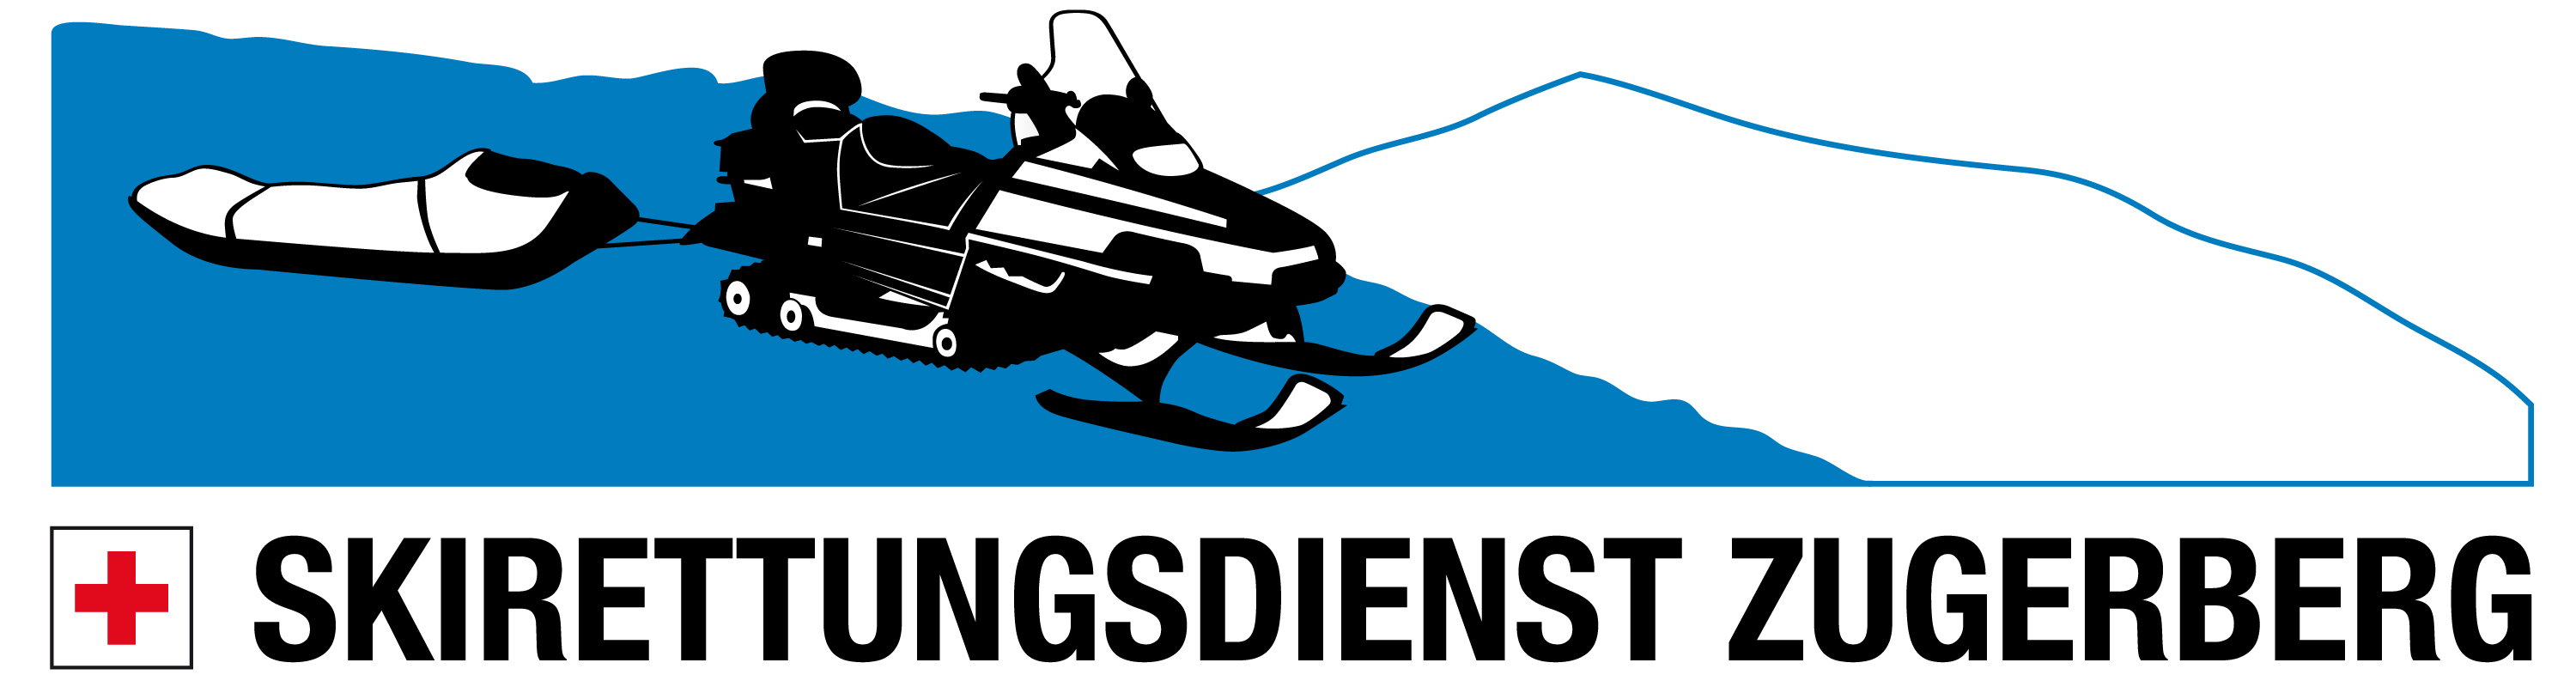 Skirettungsdienst Logo